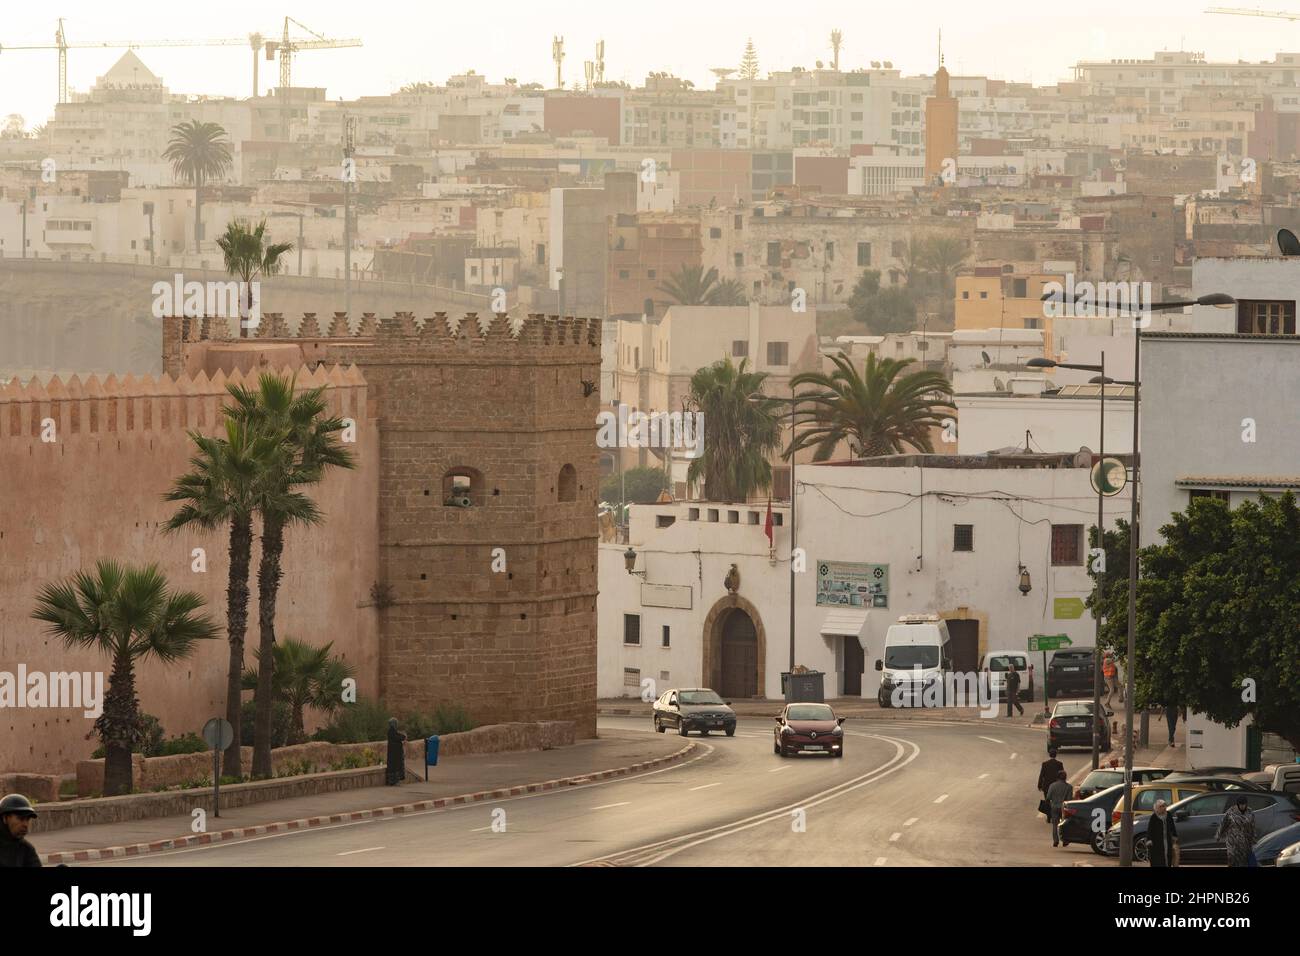 Street scene outside the old central medina in Rabat, Morocco. Stock Photo